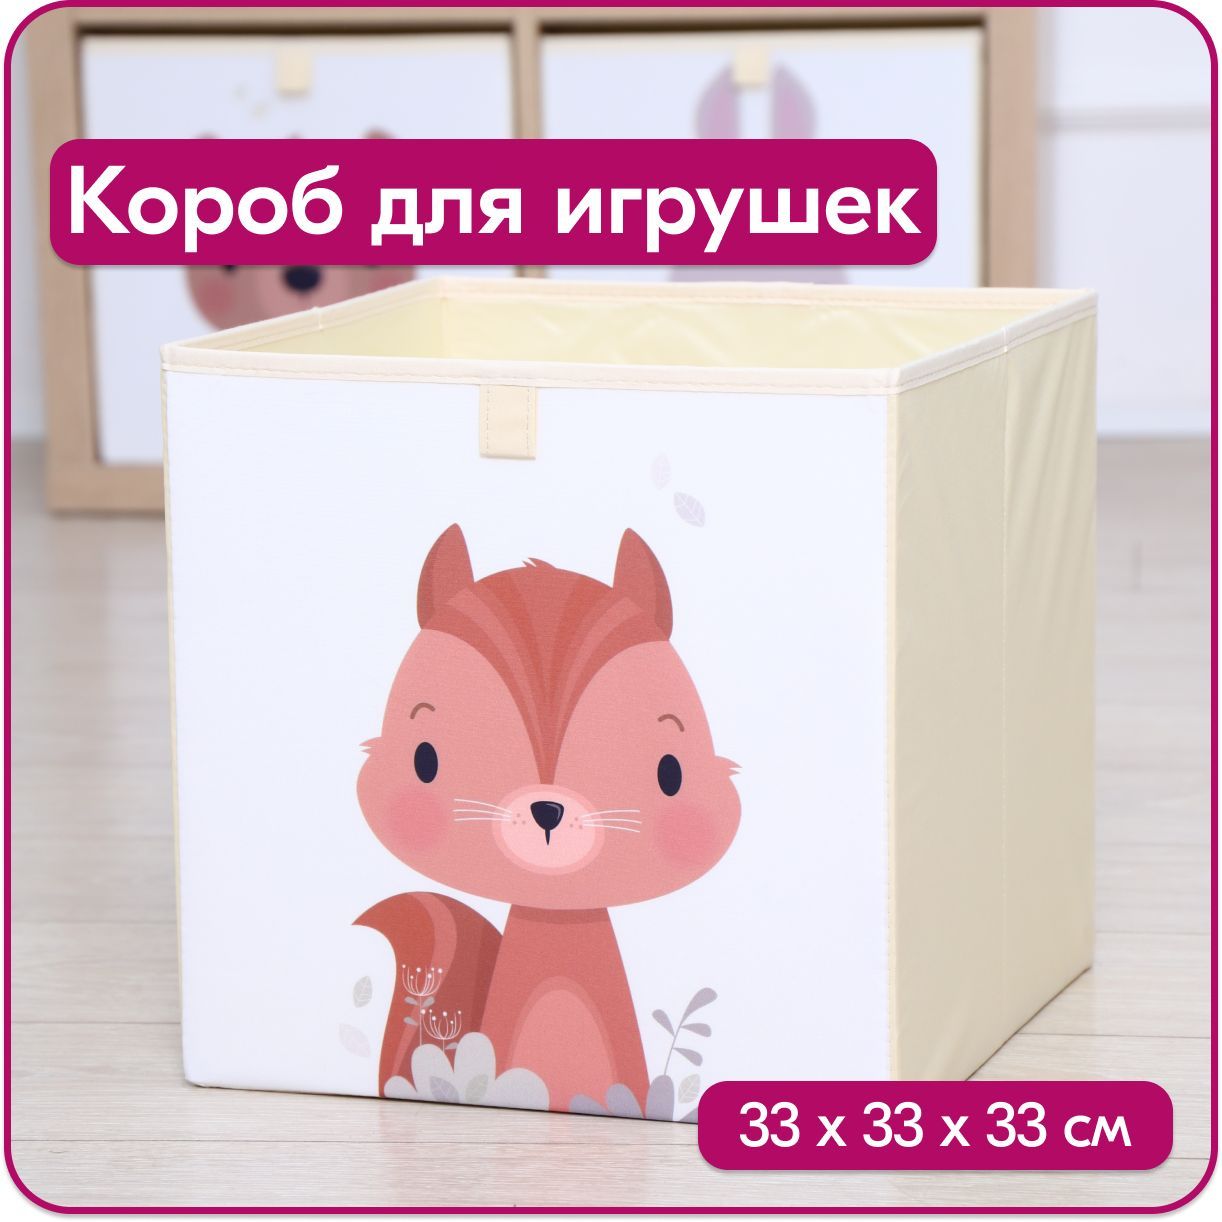 Ящик для игрушек HappySava Белка размер 33x33x33 см объем 35 литров